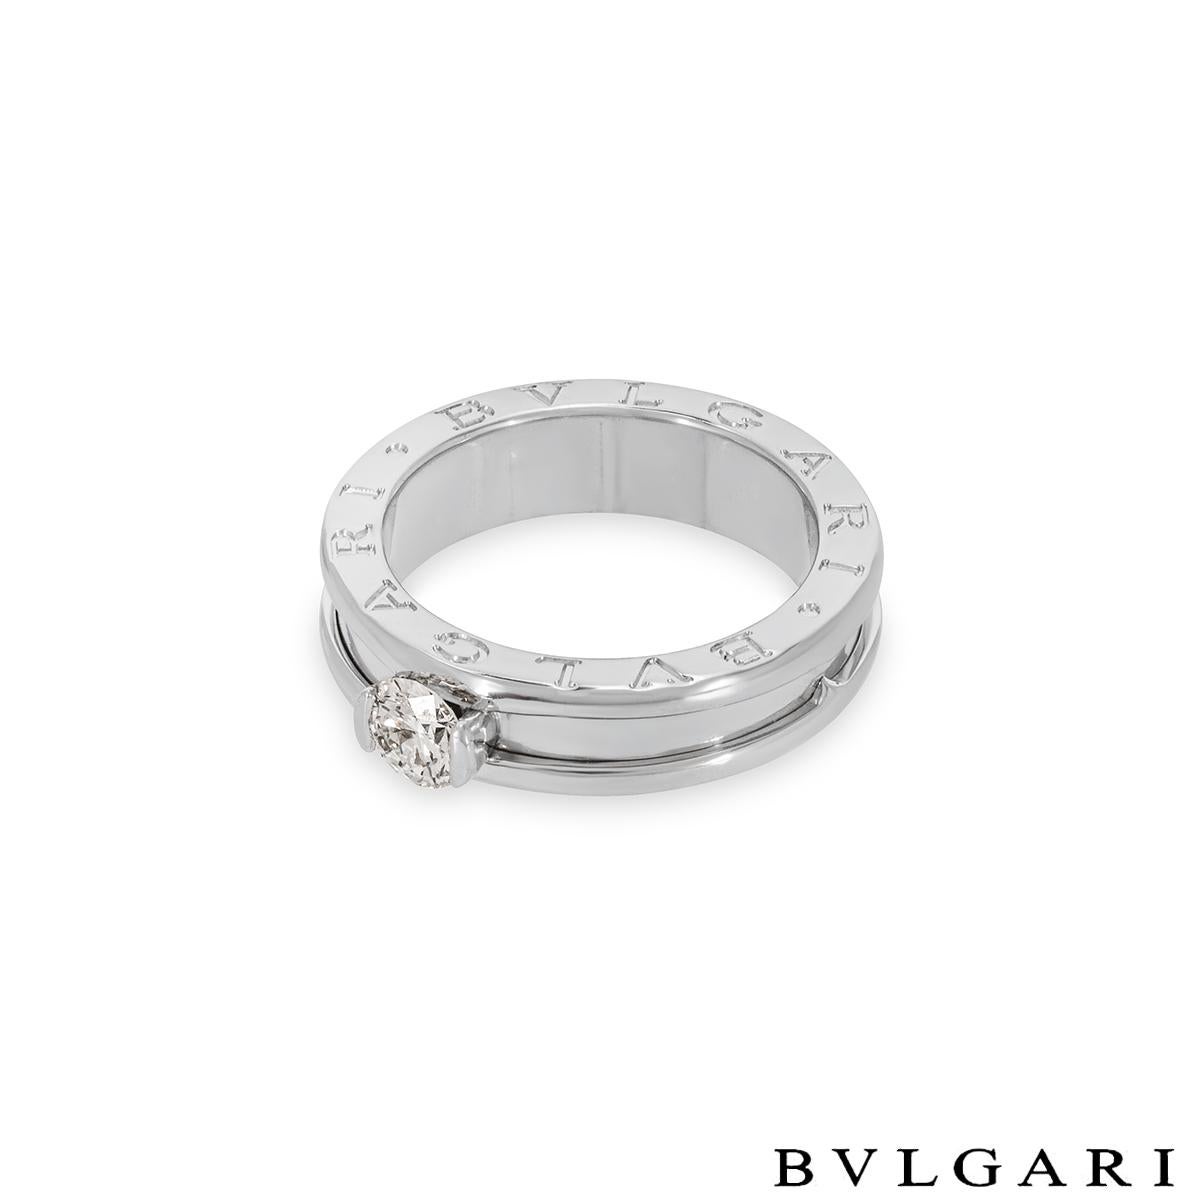 bvlgari wedding ring price